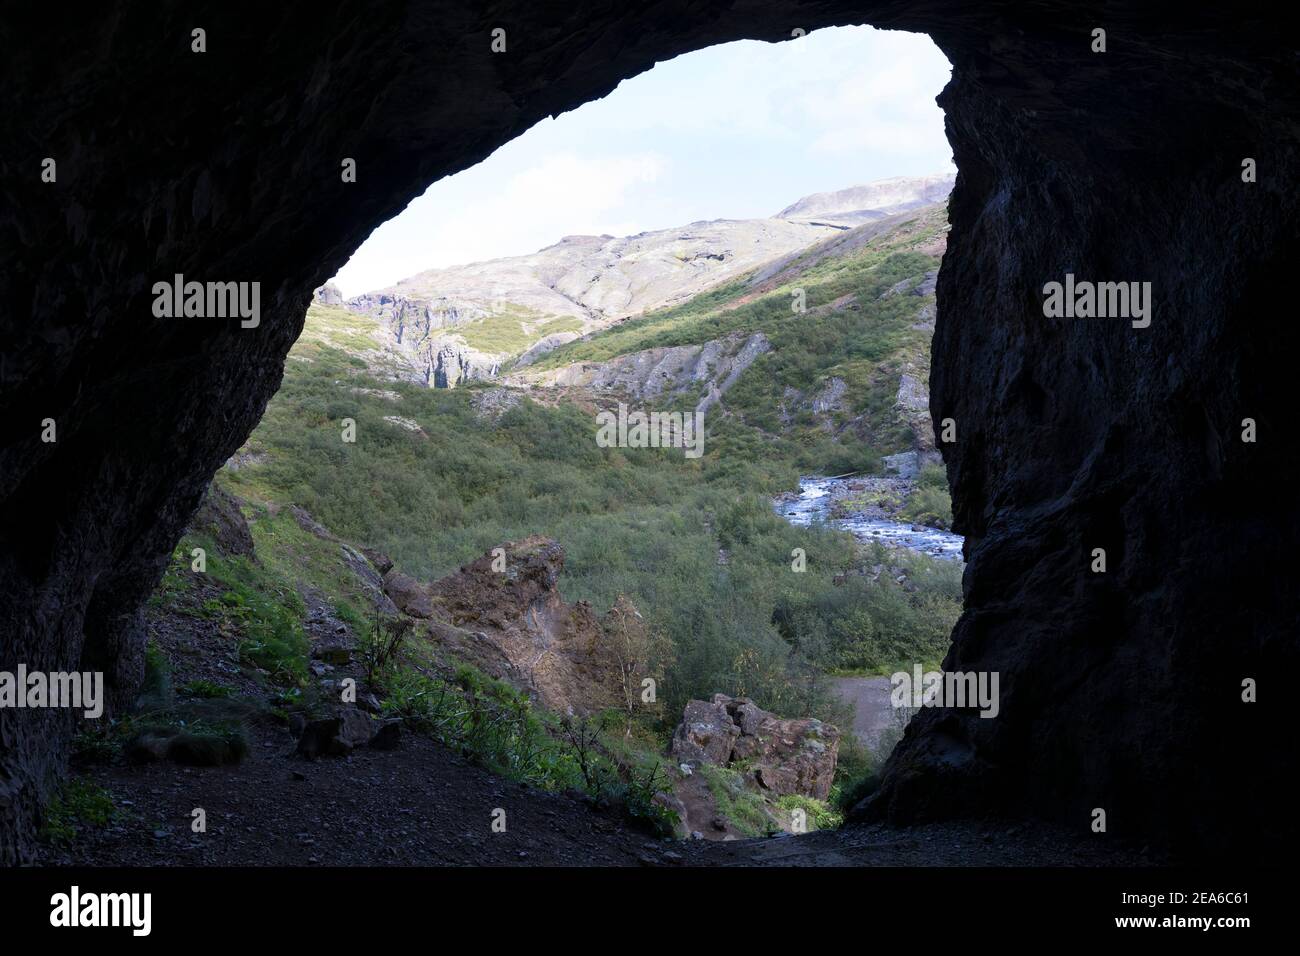 Höhle am Weg zur Schlucht des Flusses, Baches Botnsá im Westen Islands, river in the west of Iceland Stock Photo